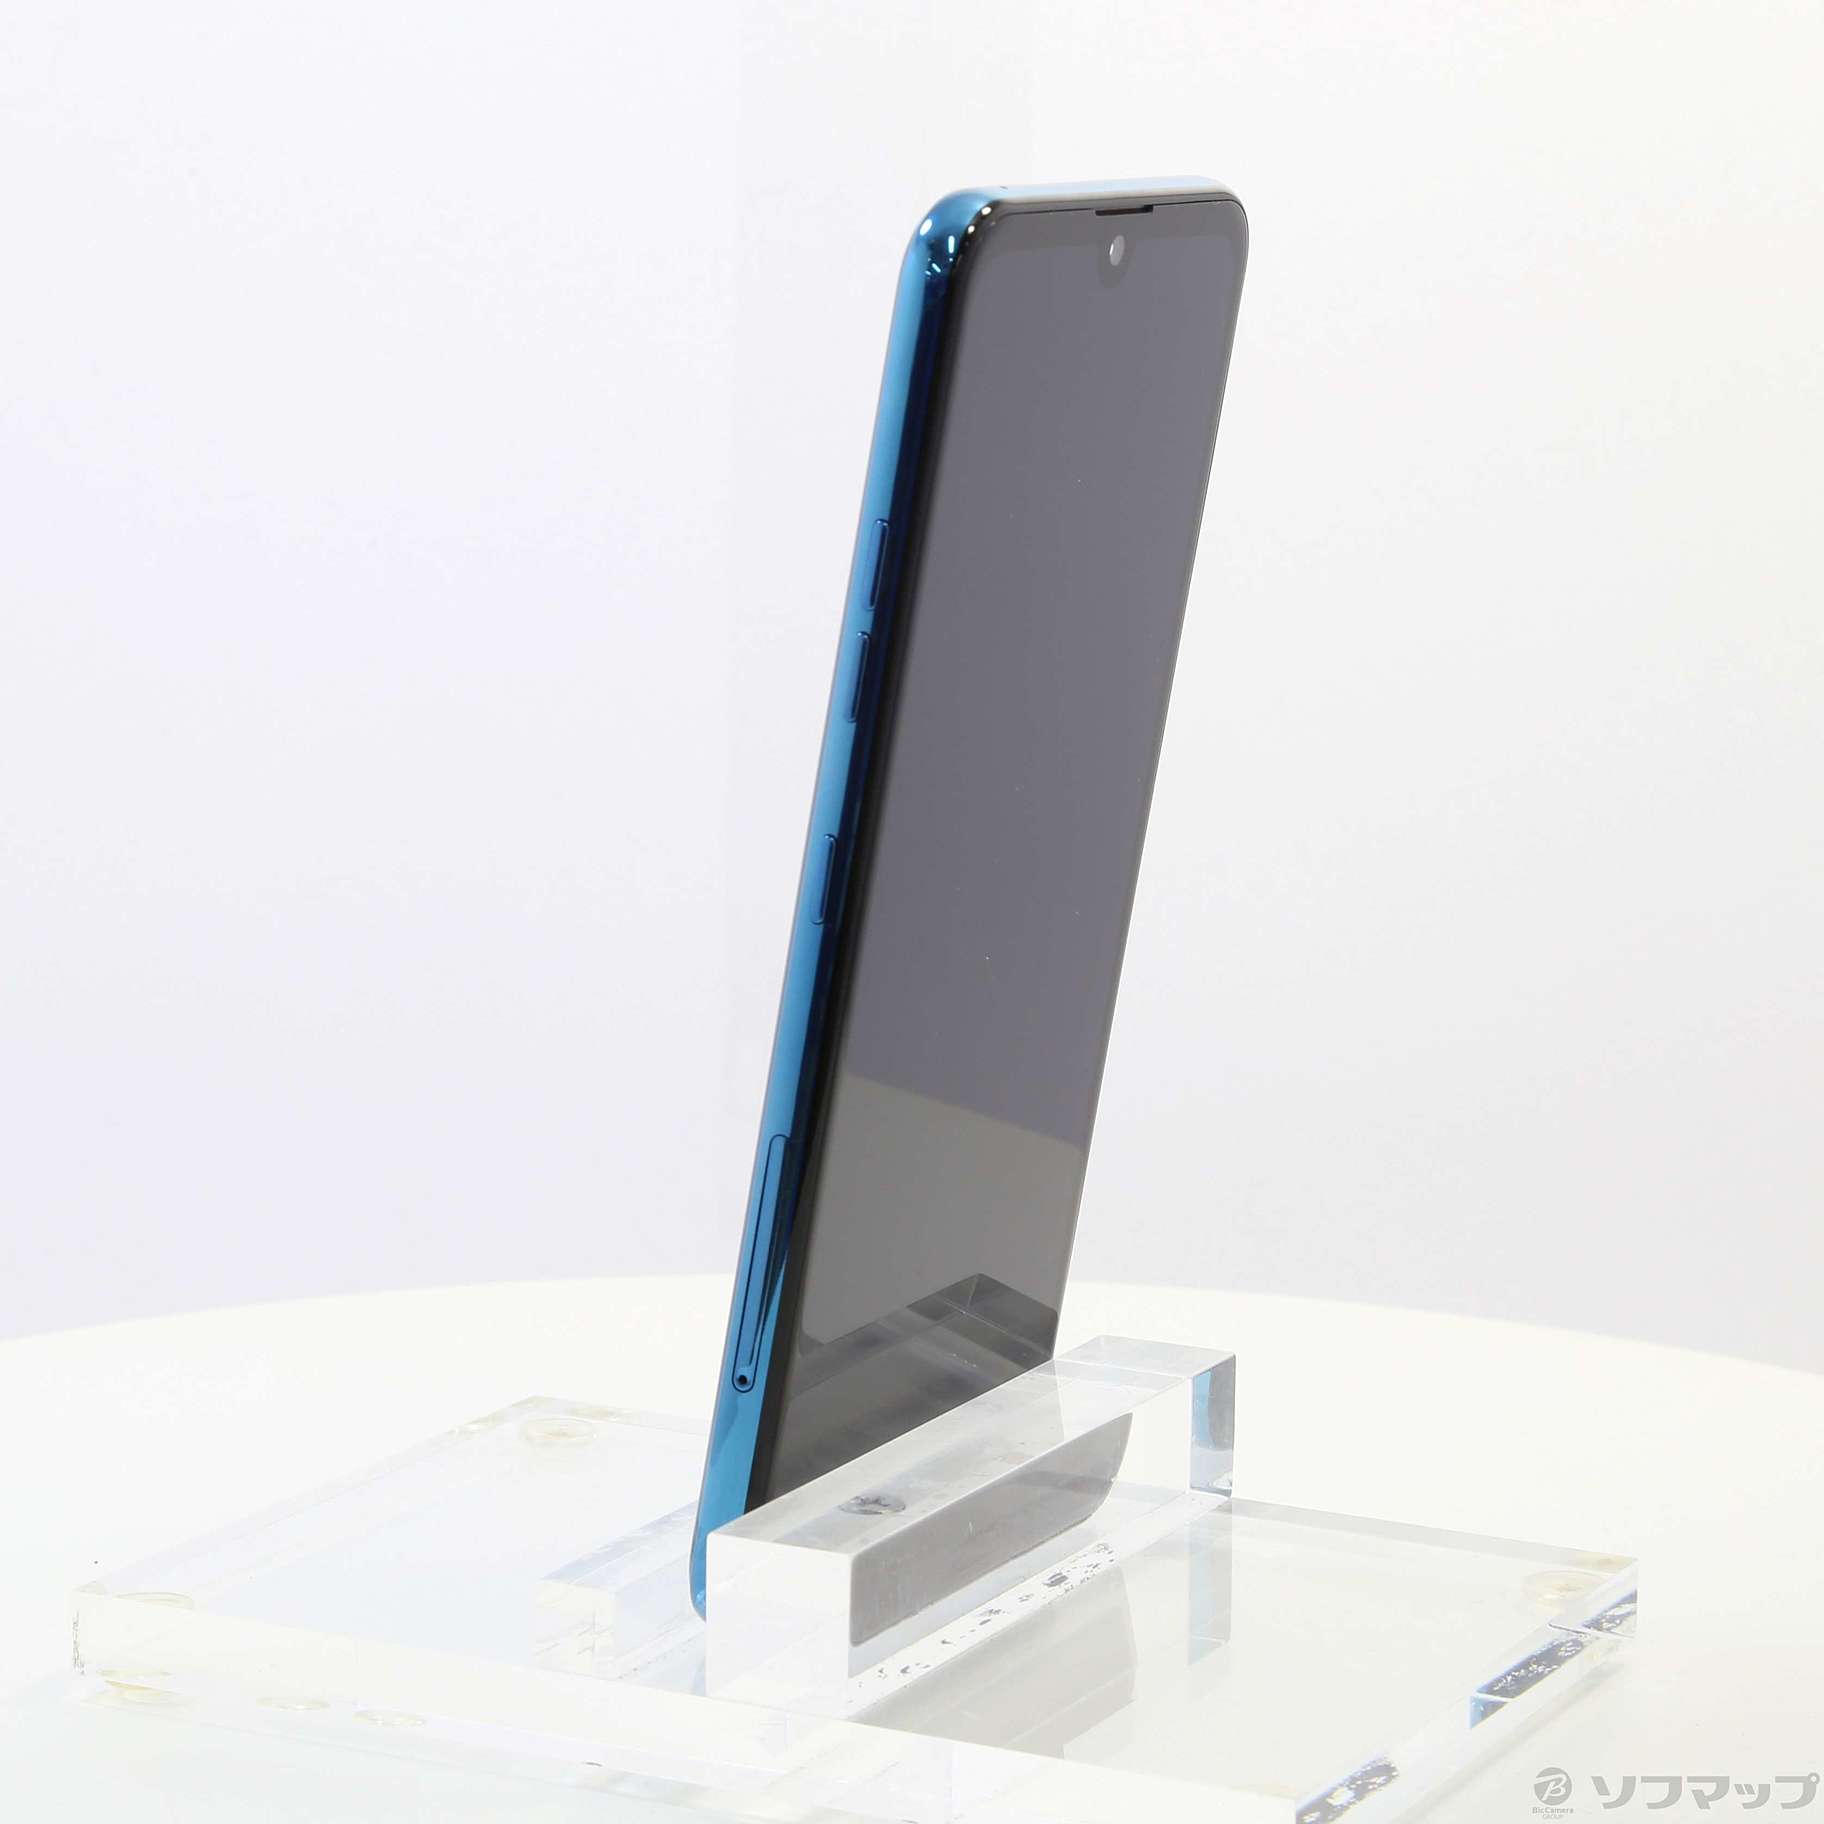 中古】LG K50 32GB スペースブルー SBLGK50 SoftBank [2133033481367